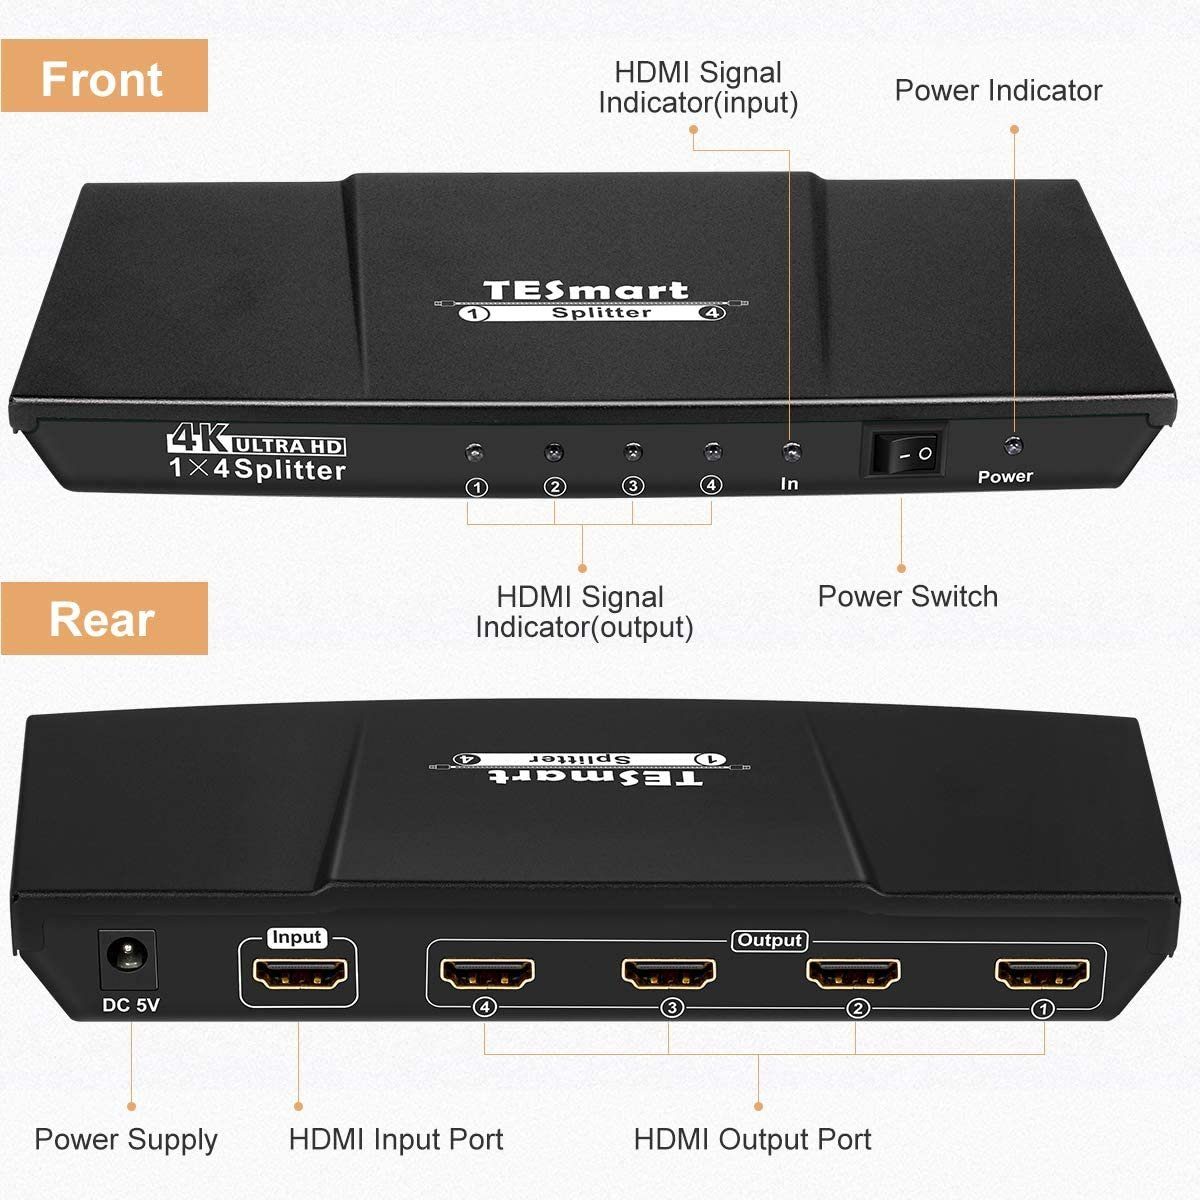 TESmart »HDMI Splitter 1×4 4K@30Hz HDMI Verteiler 1 In 4 Out unterstützt  HDR 3D HDCP 1.4 für HDTV/PC/STB/DVD Player/TV Box/PS3/4/Xbox/Switch/Roku/Chromecast/Fire  Stick-Mattschwarz HSP0104A30« Computer-Adapter online kaufen | OTTO